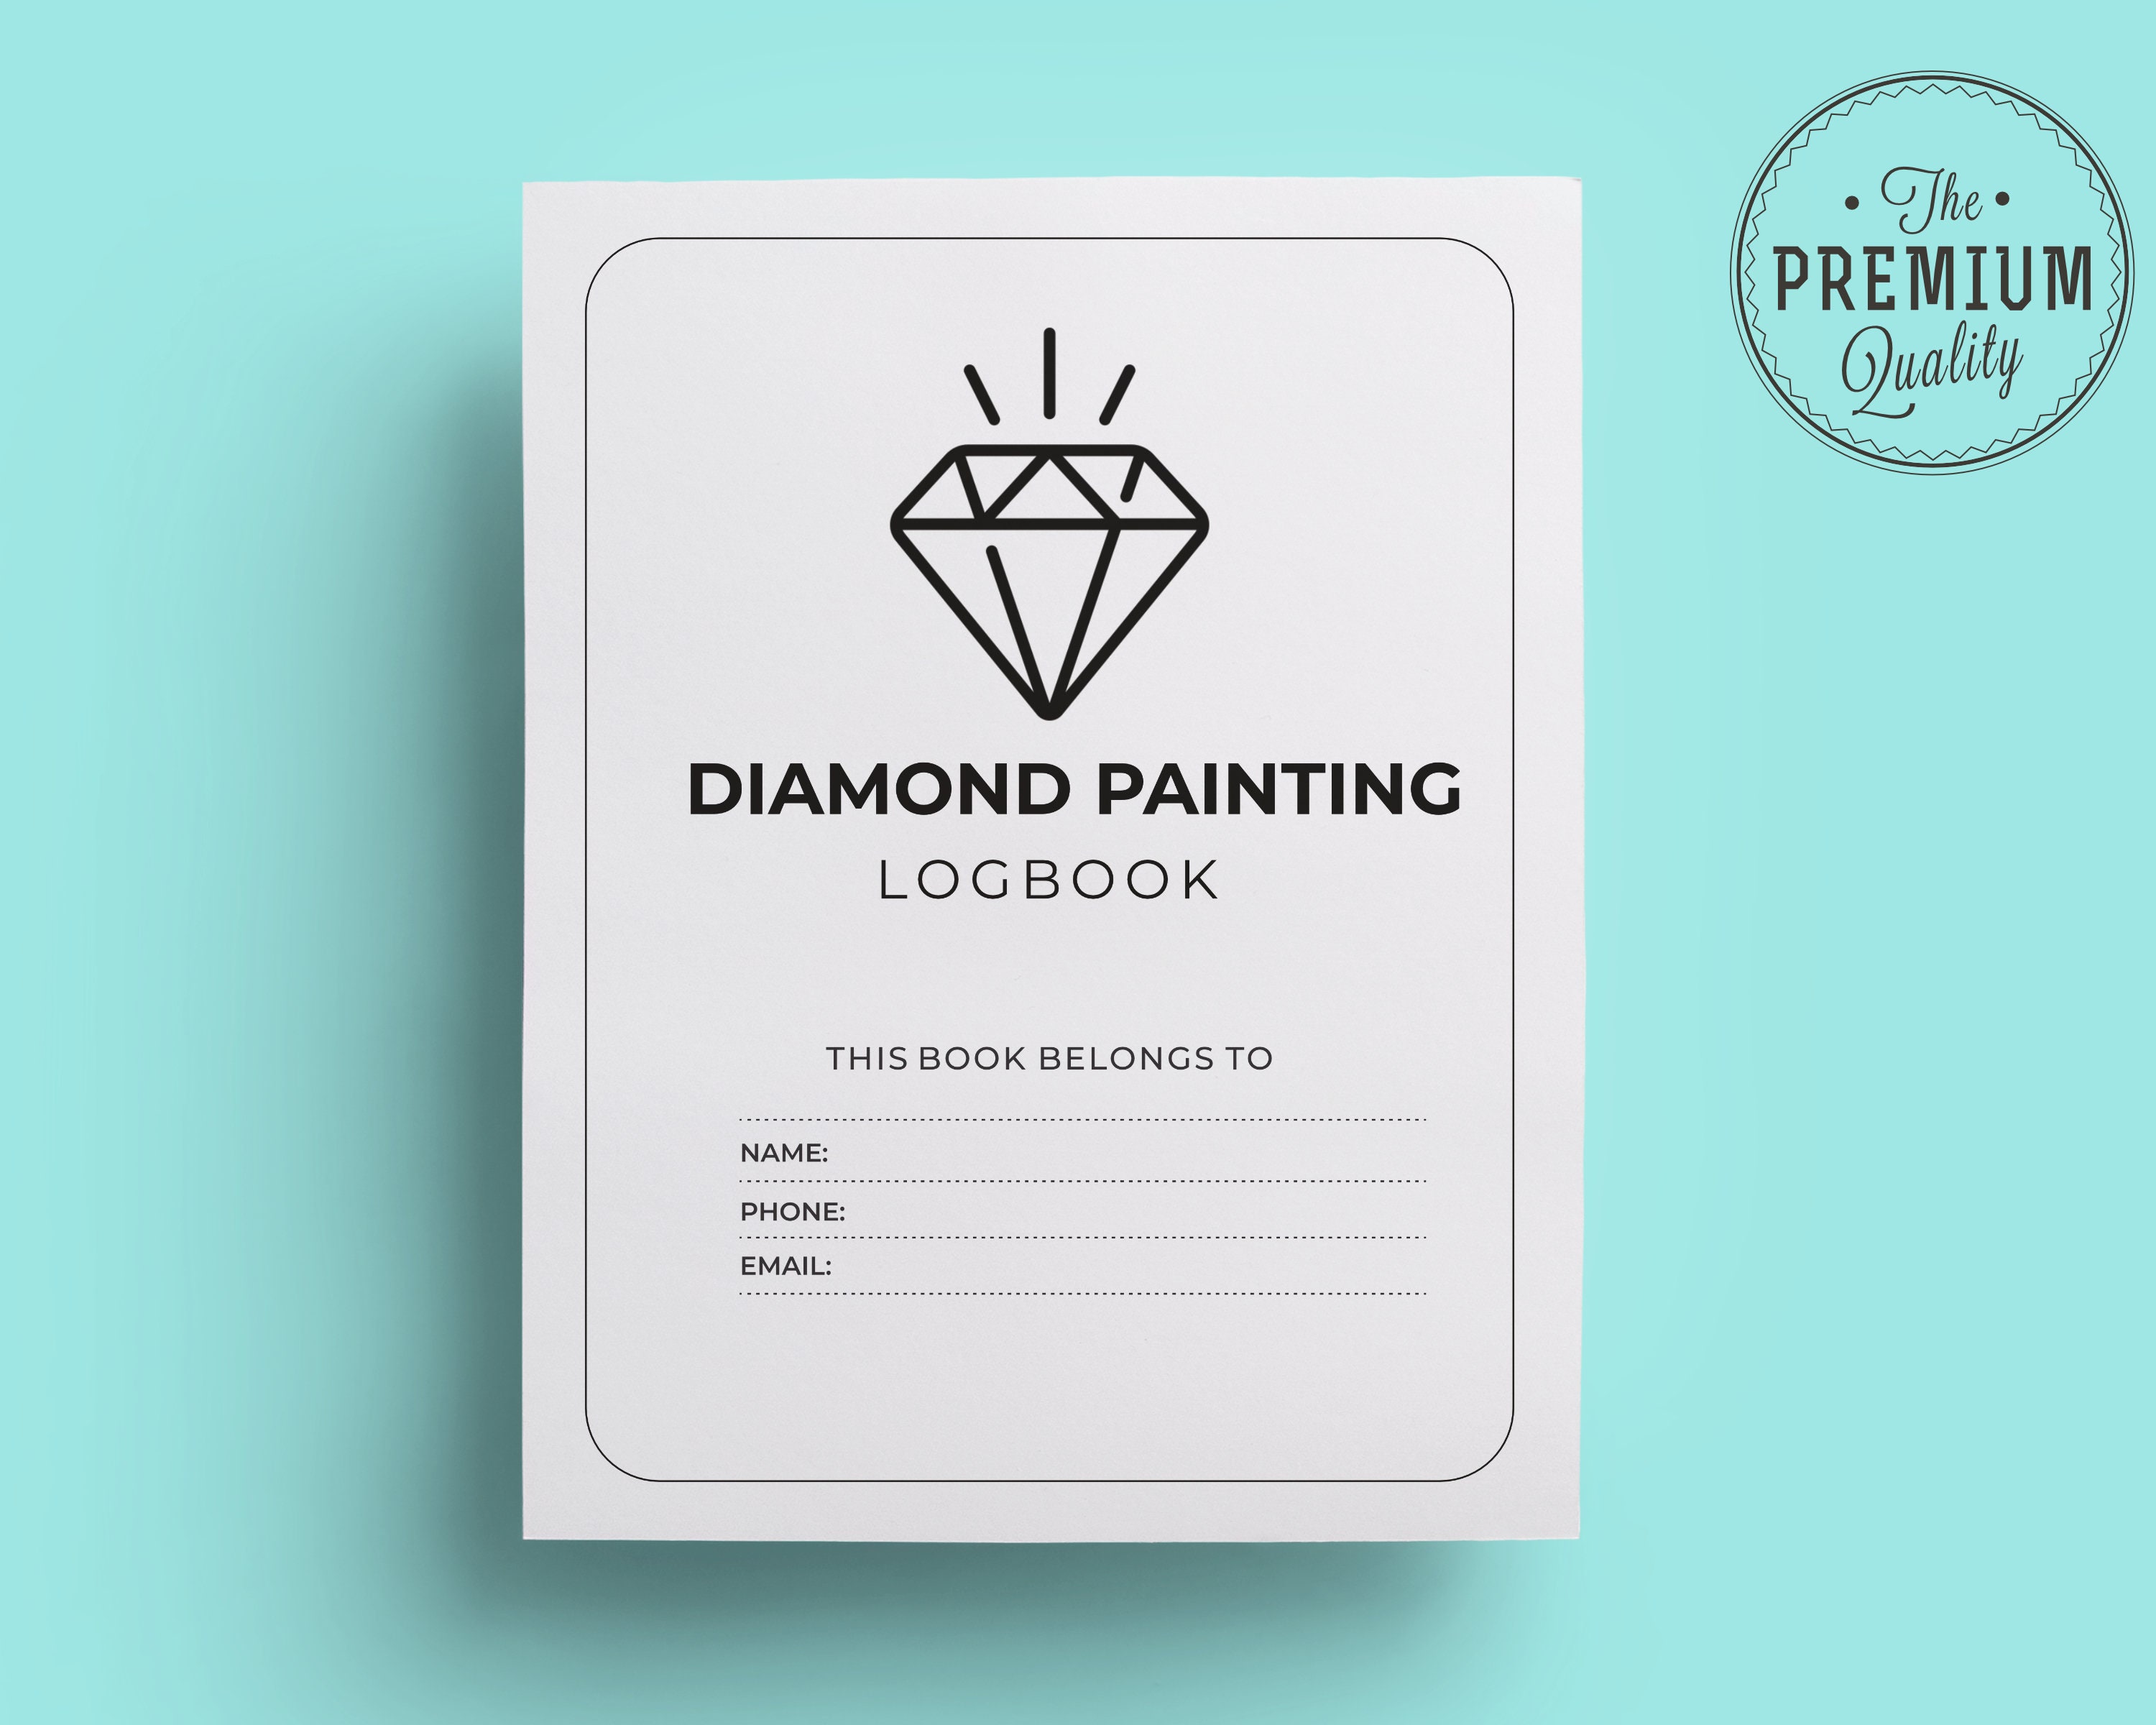 Diamond painting log book : r/diamondpainting